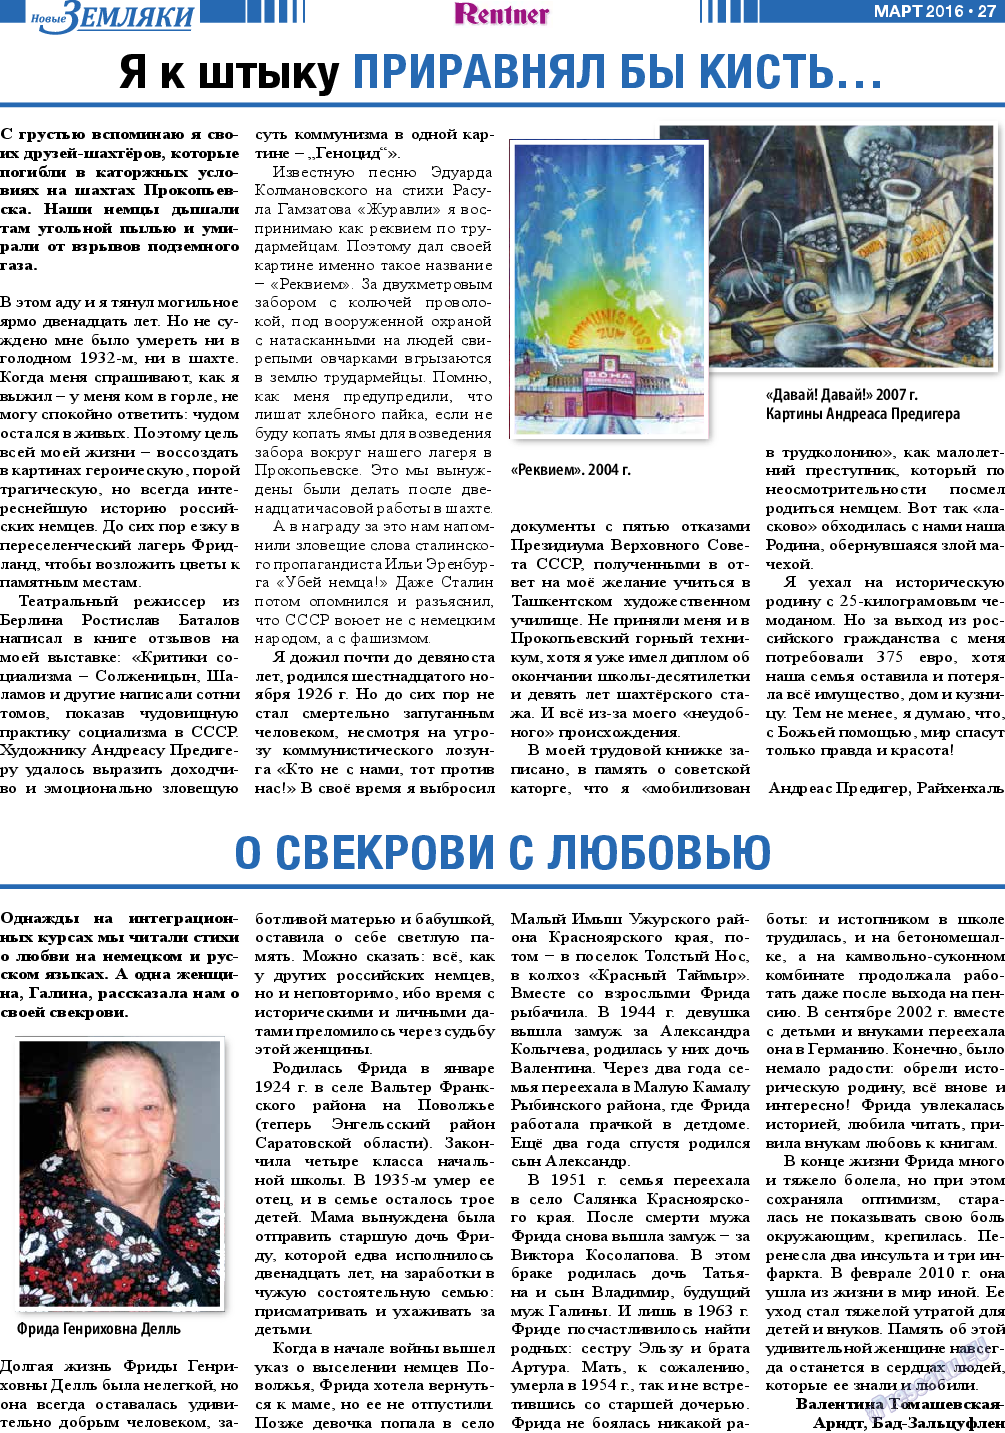 Новые Земляки, газета. 2016 №3 стр.27